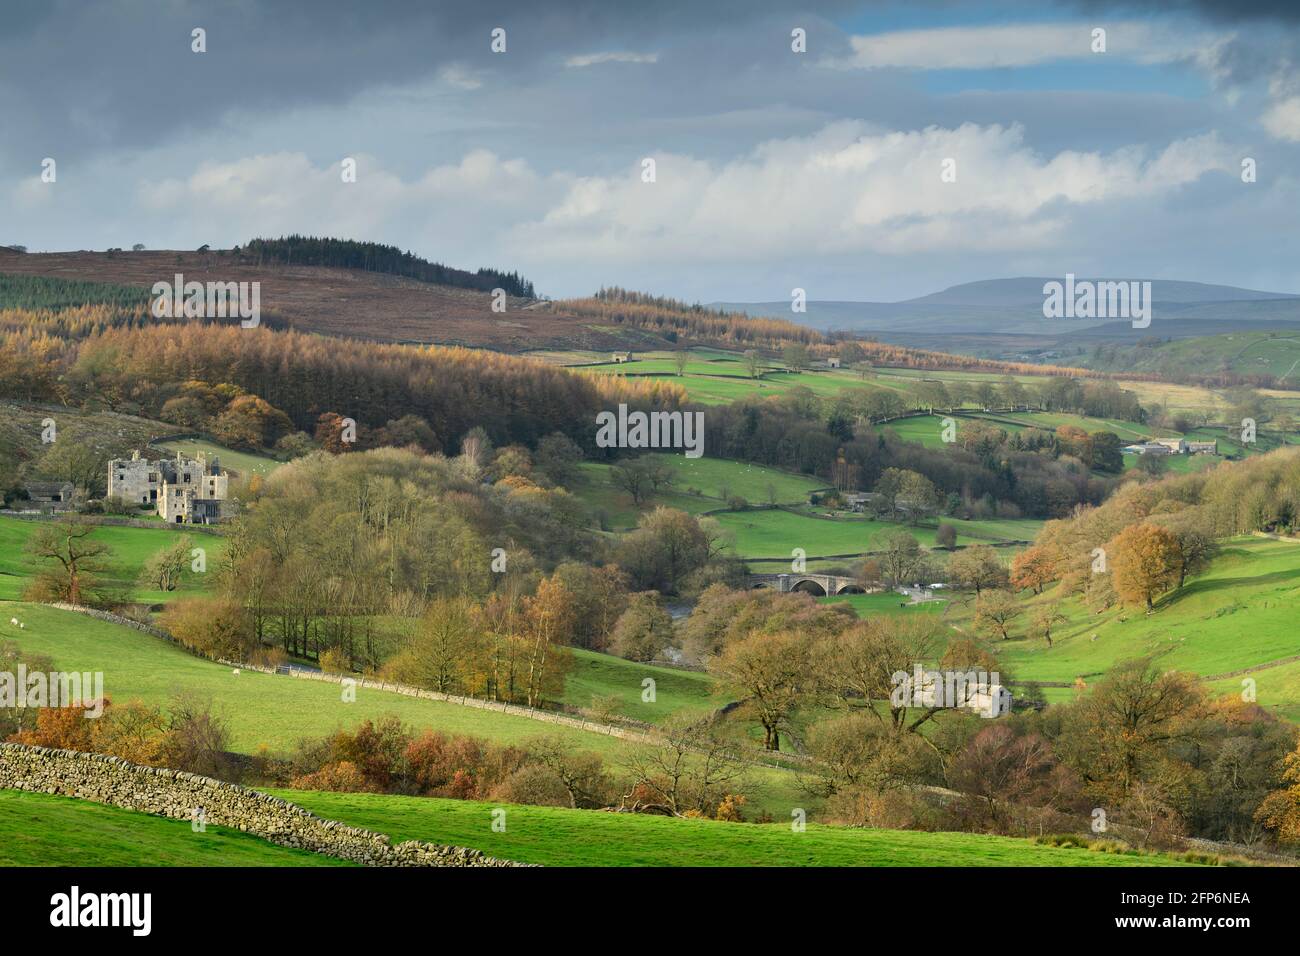 Pittoresque région rurale de Wharfedale (vallée verdoyante, collines ondoyantes, hauts fells et landes, pont de Barden et ruines de la tour) - Yorkshire Dales Angleterre, Royaume-Uni. Banque D'Images